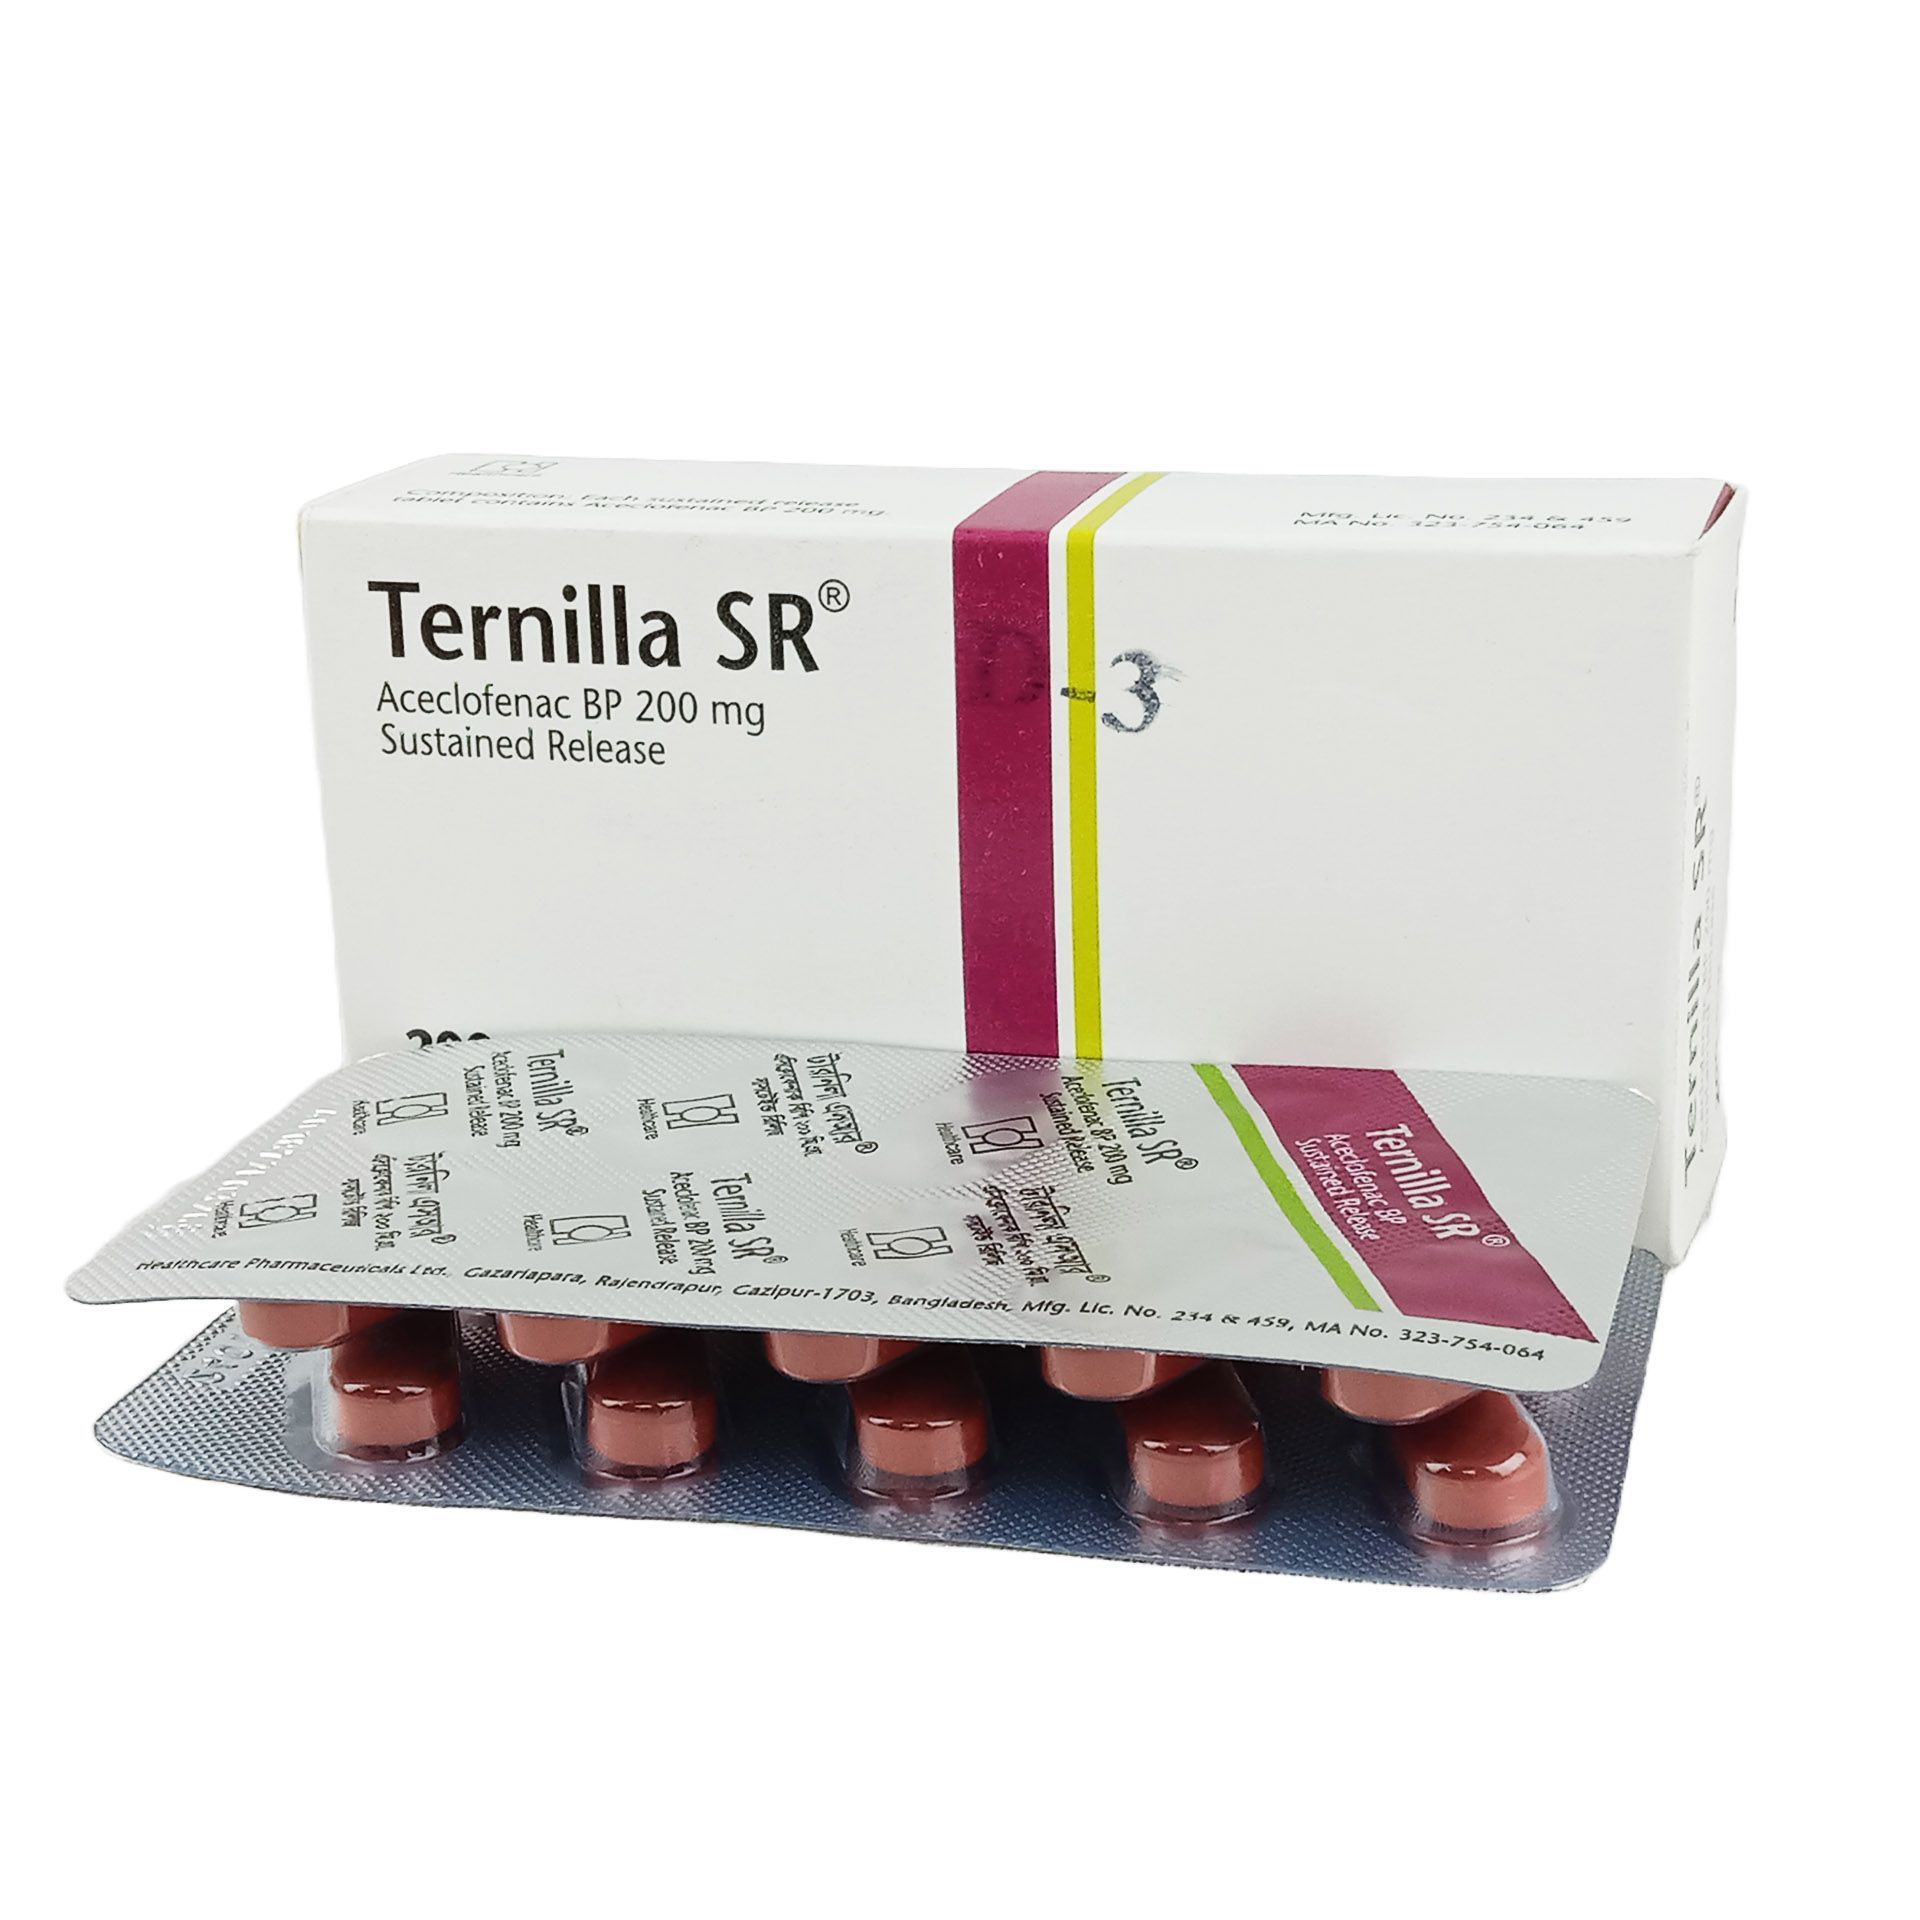 Ternilla SR 200mg tablet